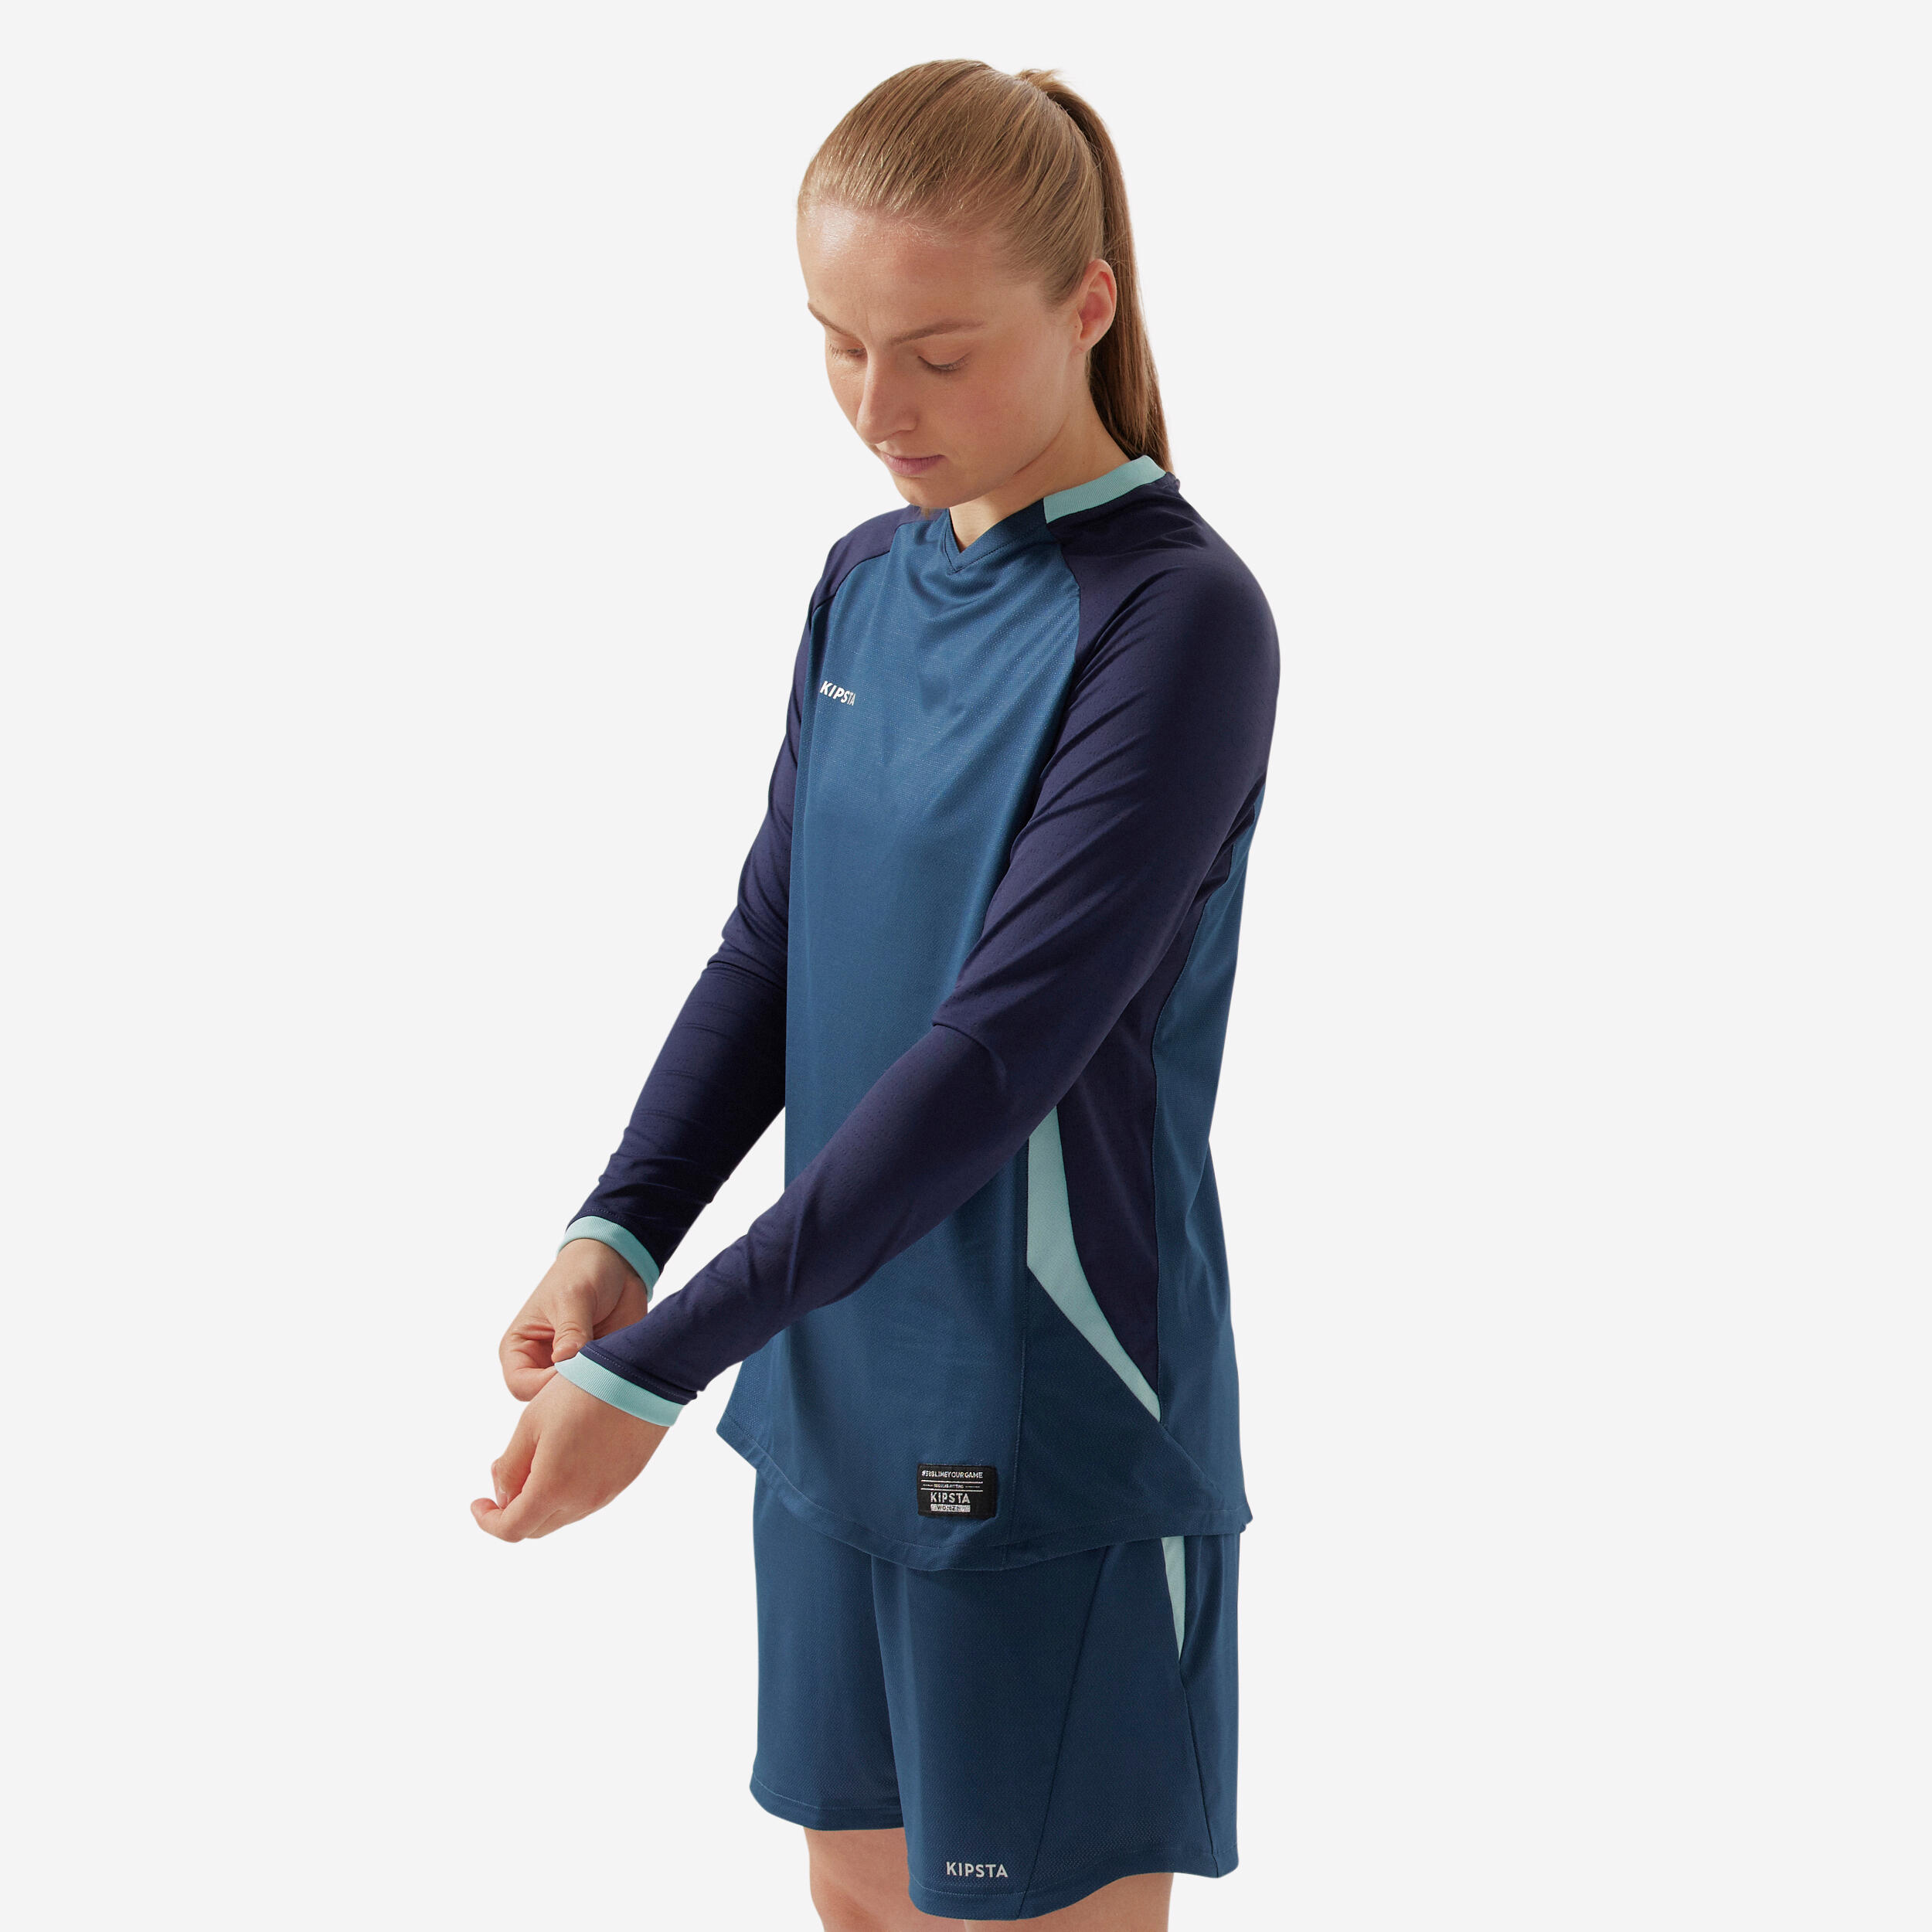 Women's Long-Sleeved Slim-Cut Football Shirt - Blue 7/8